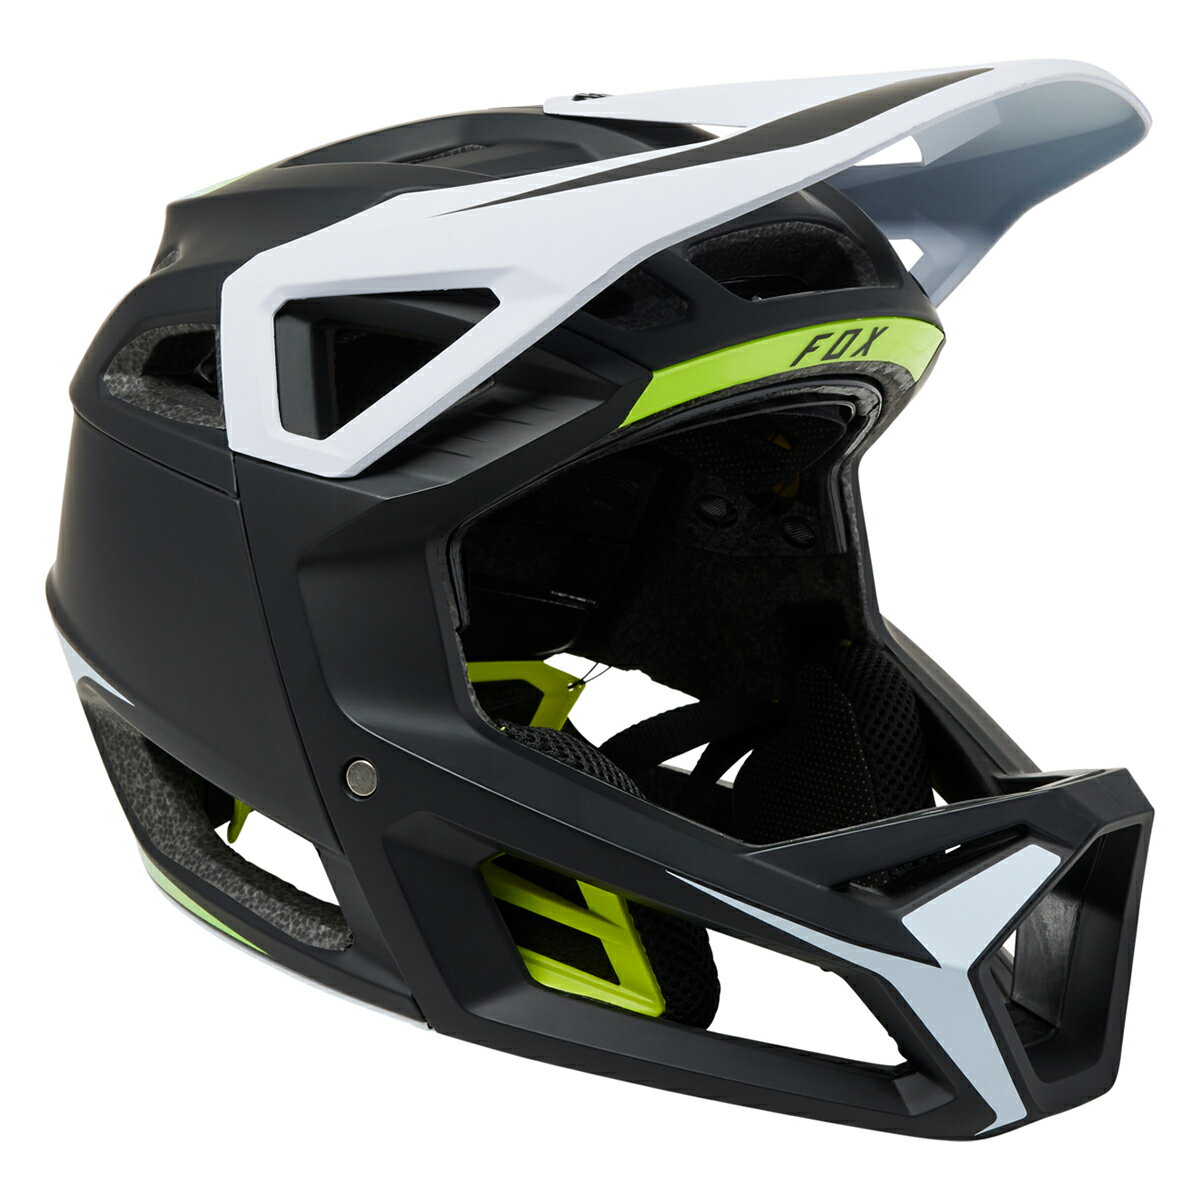 FOX MTB プロフレームRSヘルメット Sサイズ ブラック/イエロー 29868-019-S